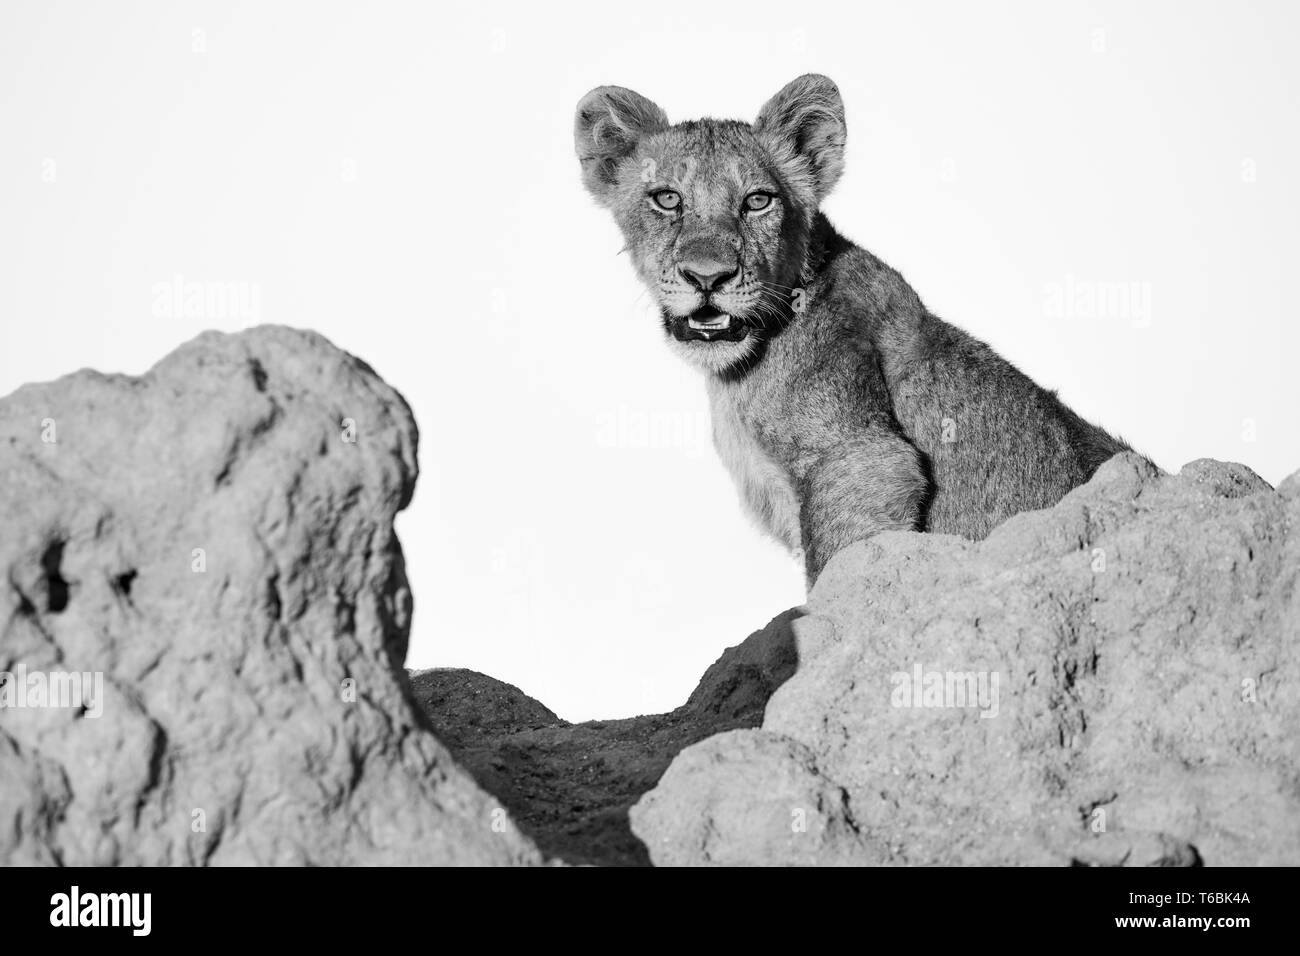 Un lion cub, Panther leo, est assis sur une termitière, regard, bouche ouverte, en noir et blanc Banque D'Images